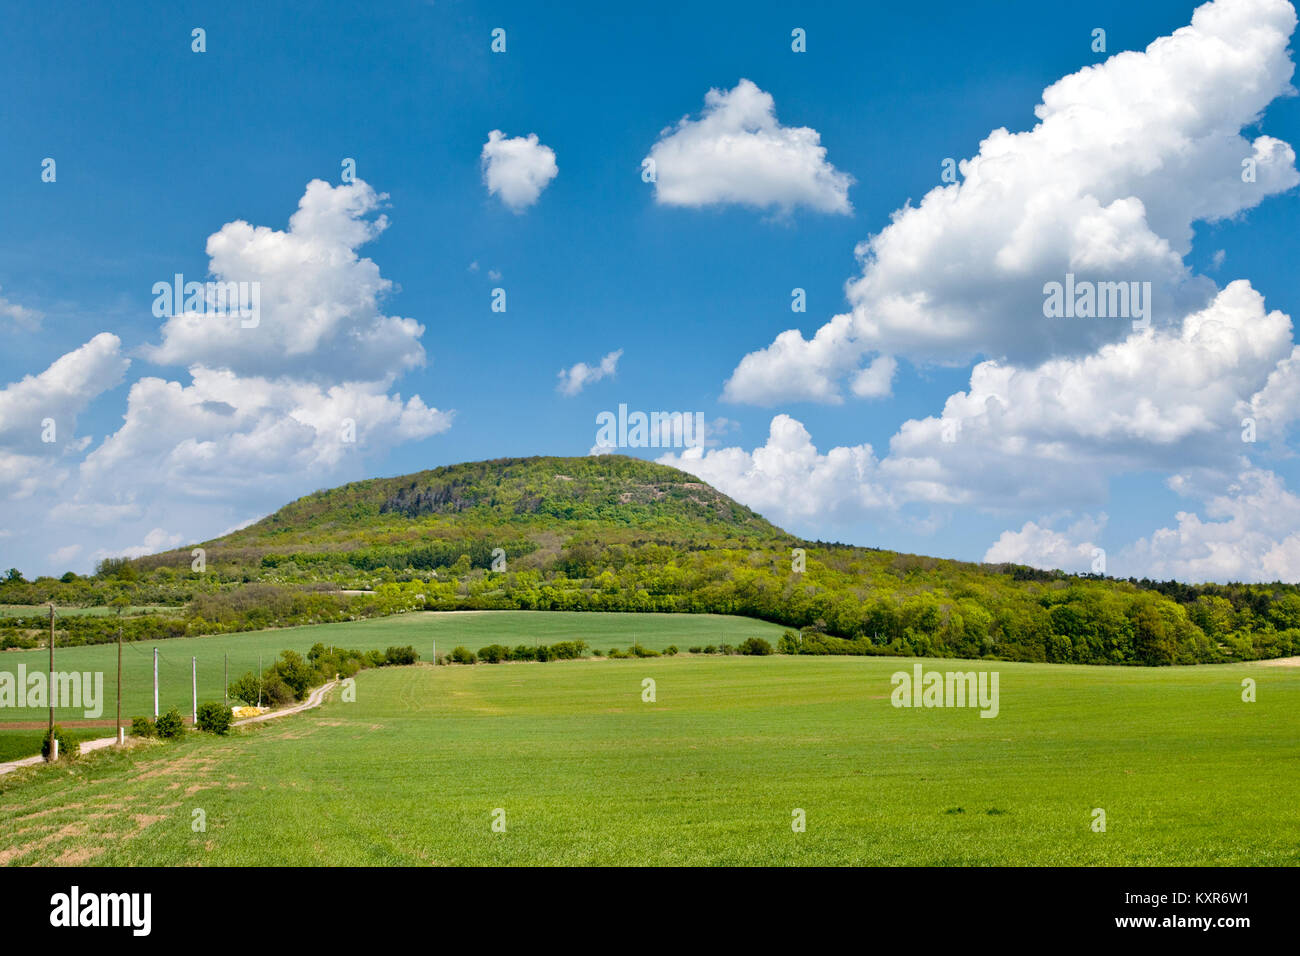 La colline mystique nationale Rip, Central Bohemia, République tchèque - Paysage de printemps avec des champs verts et ciel bleu avec des nuages Banque D'Images